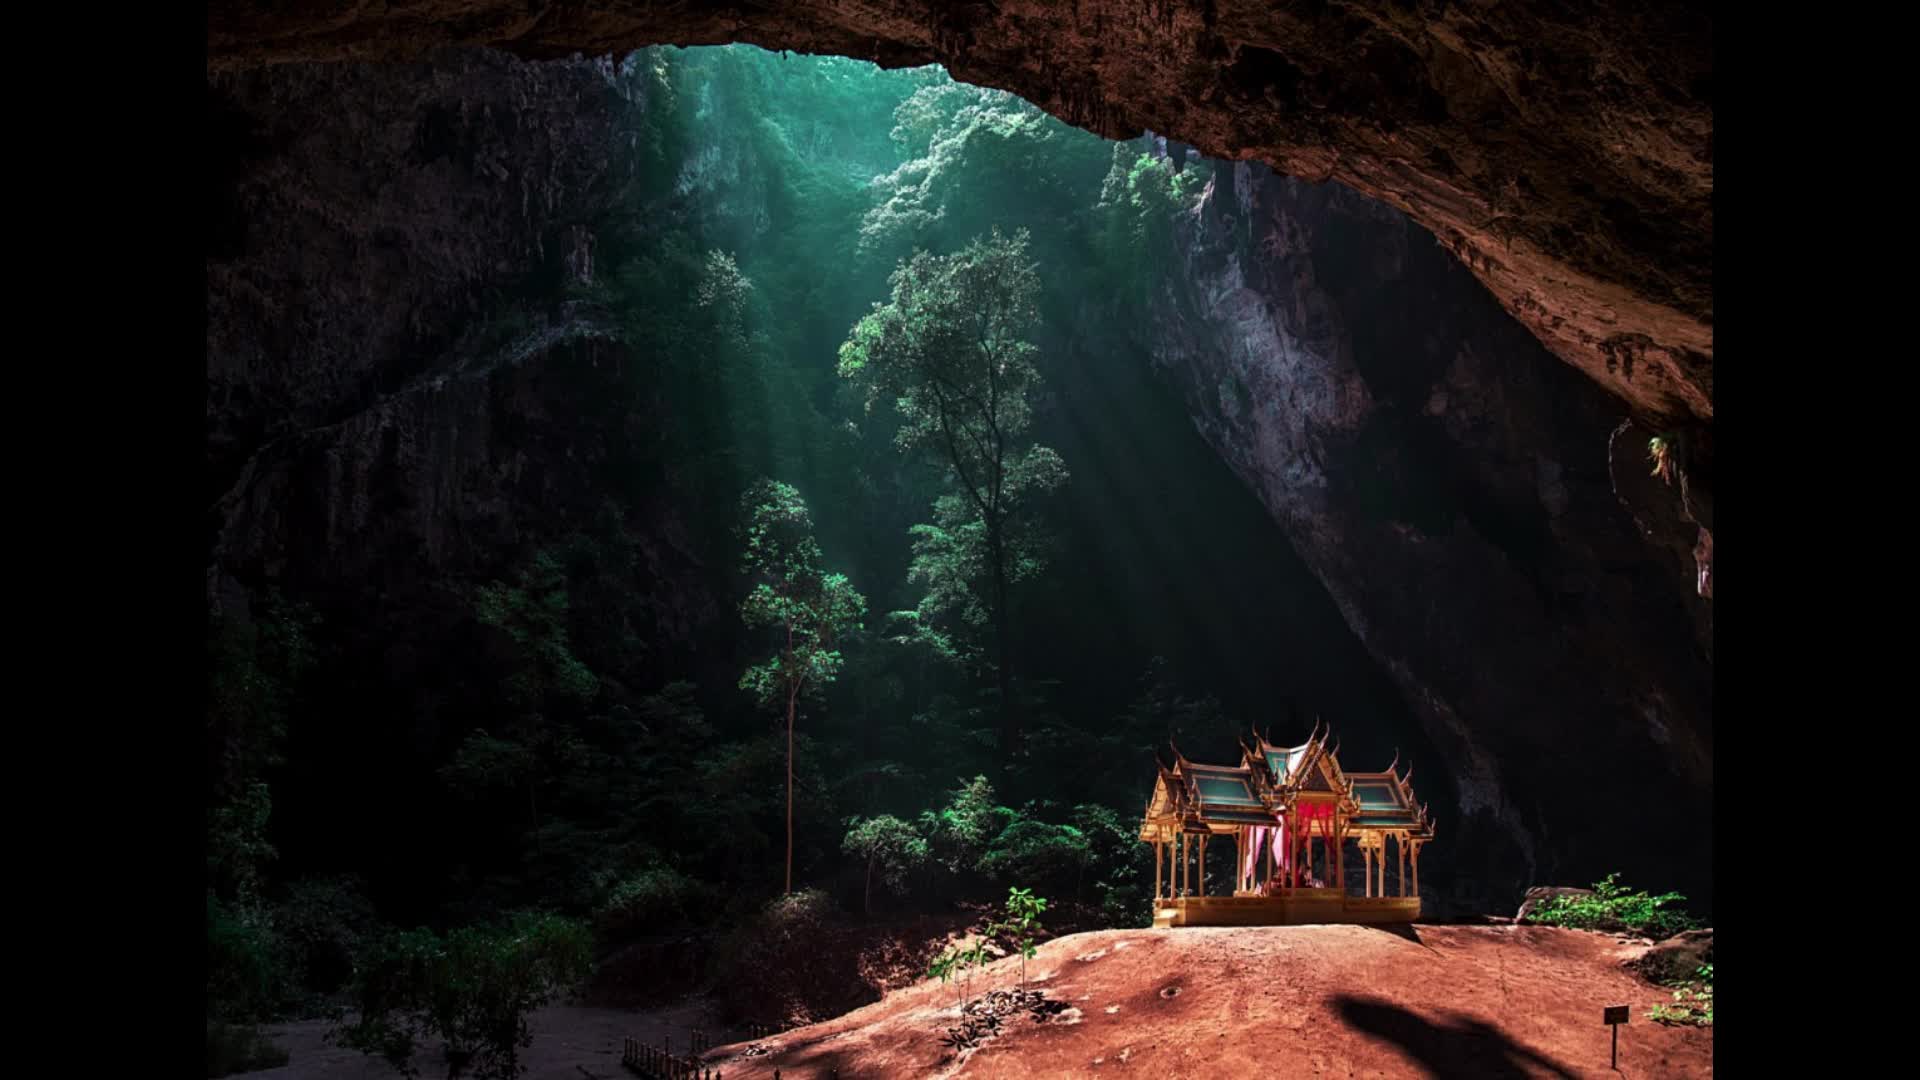 Самые красивые и интересные места. Пещера Прайя Накхон Таиланд. Таиланд. Пещера Phraya Nakorn. Прая након (Phraya Nakhon), Таиланд. Сяочжай Тянькэн.